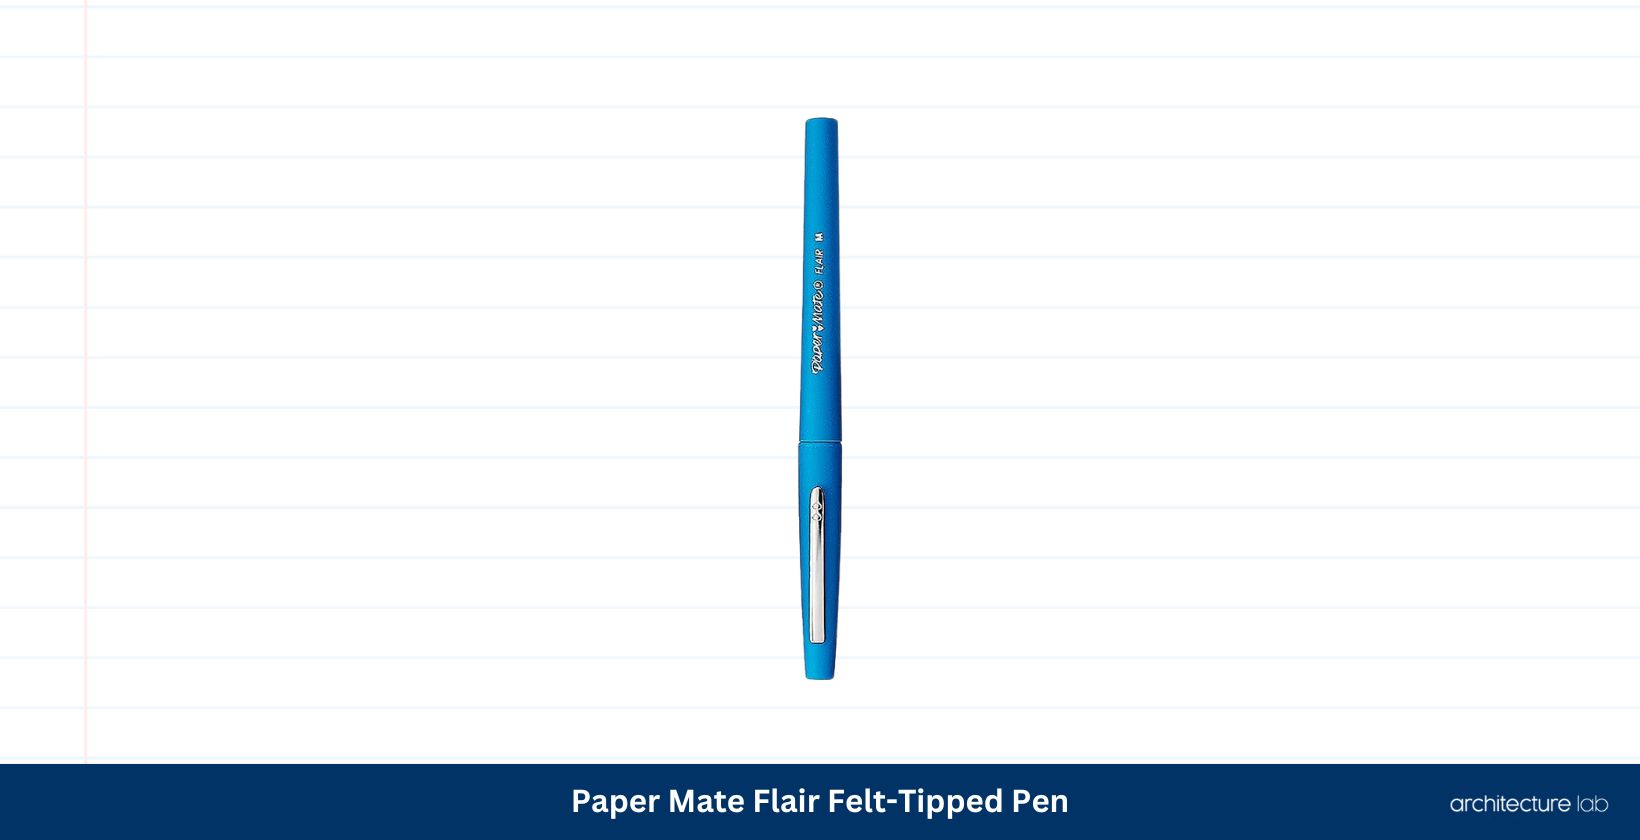 Paper mate flair felt tipped pen